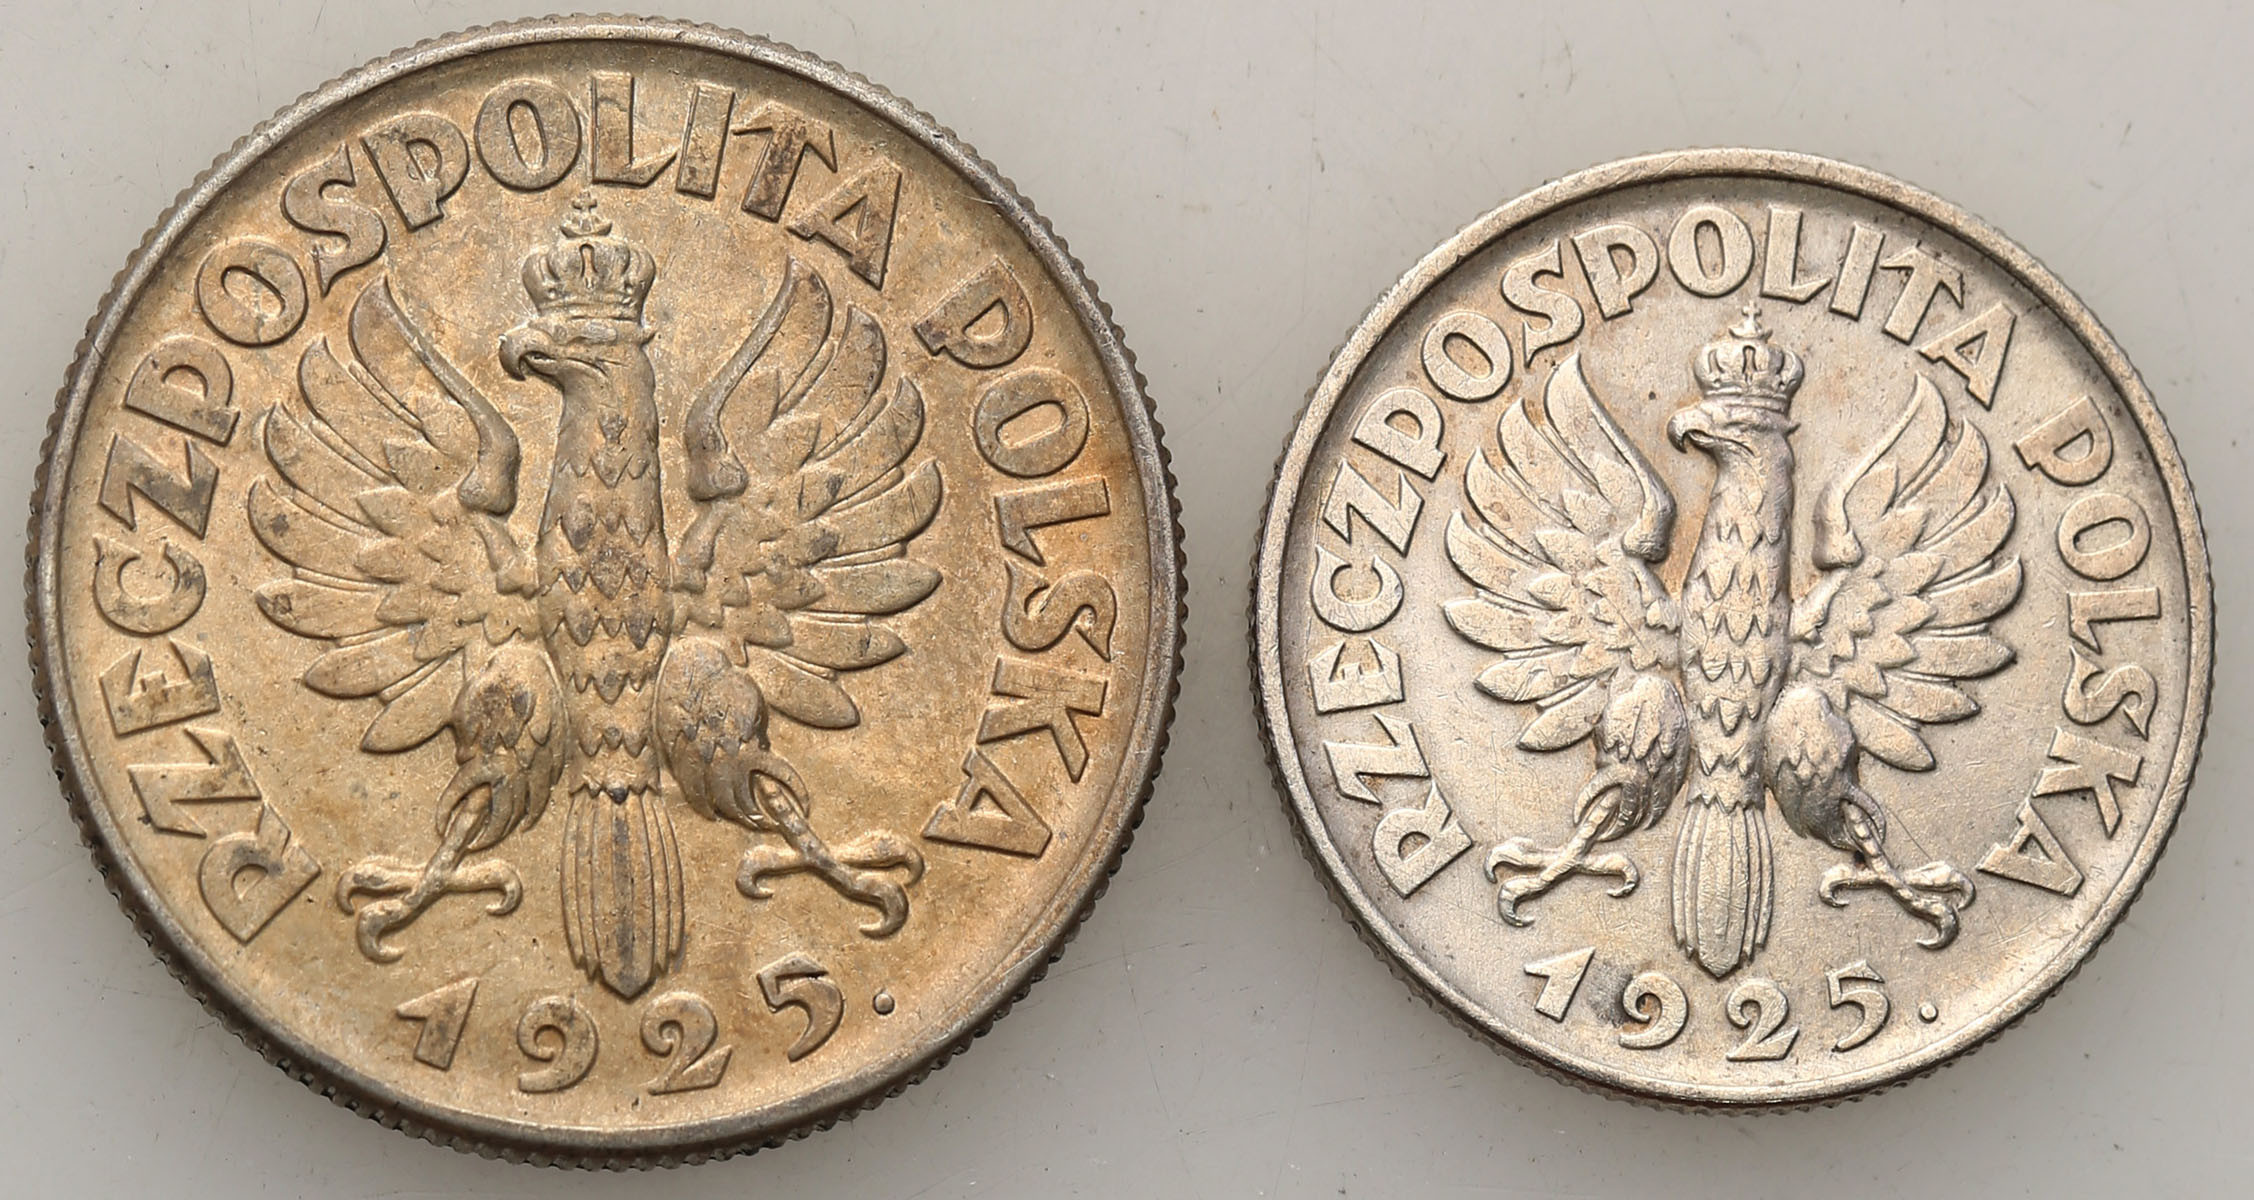 II RP. 1 złoty 1925, Londyn, 2 złote 1925 kropka, Londyn, zestaw 2 monet - ŁADNE